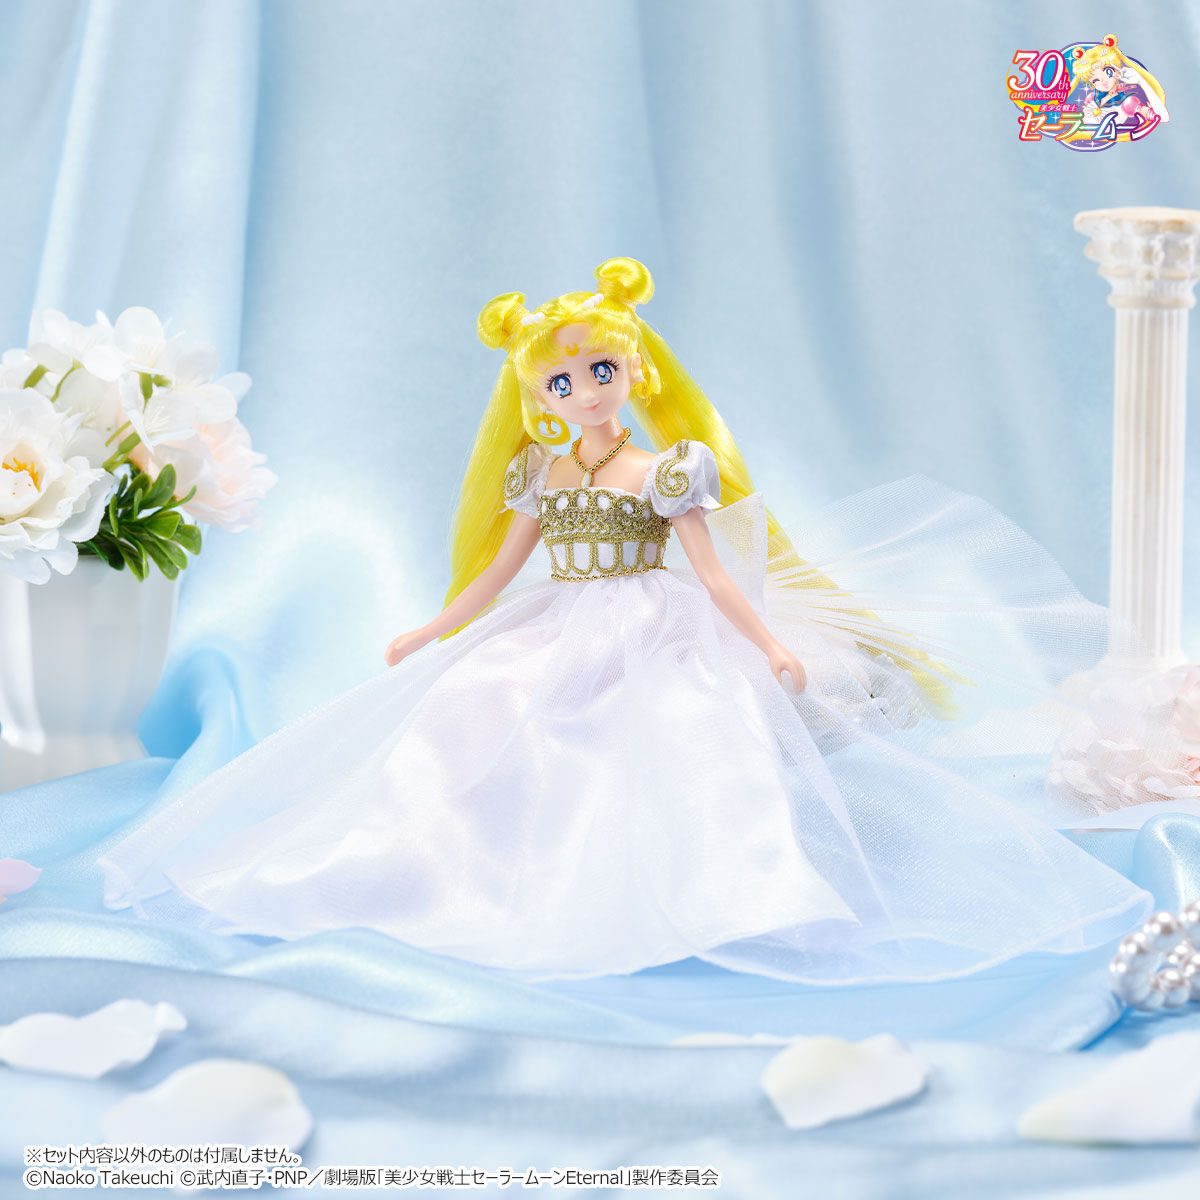 Sailor Moon Princess Serenity